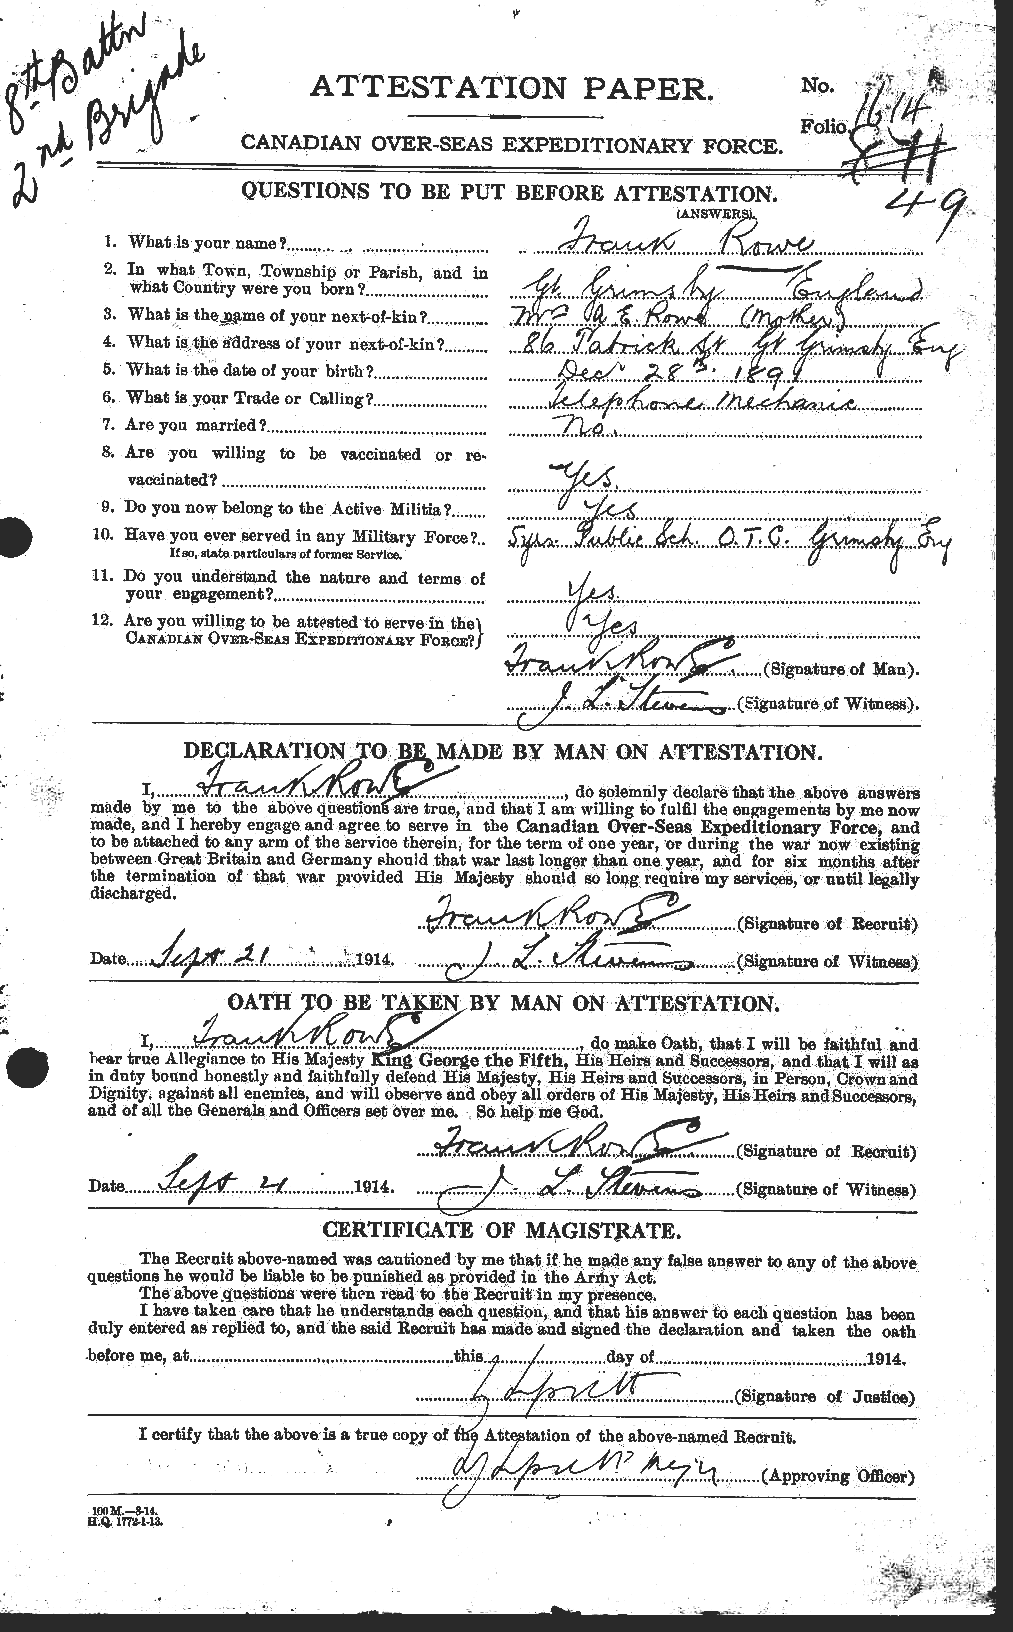 Dossiers du Personnel de la Première Guerre mondiale - CEC 615851a